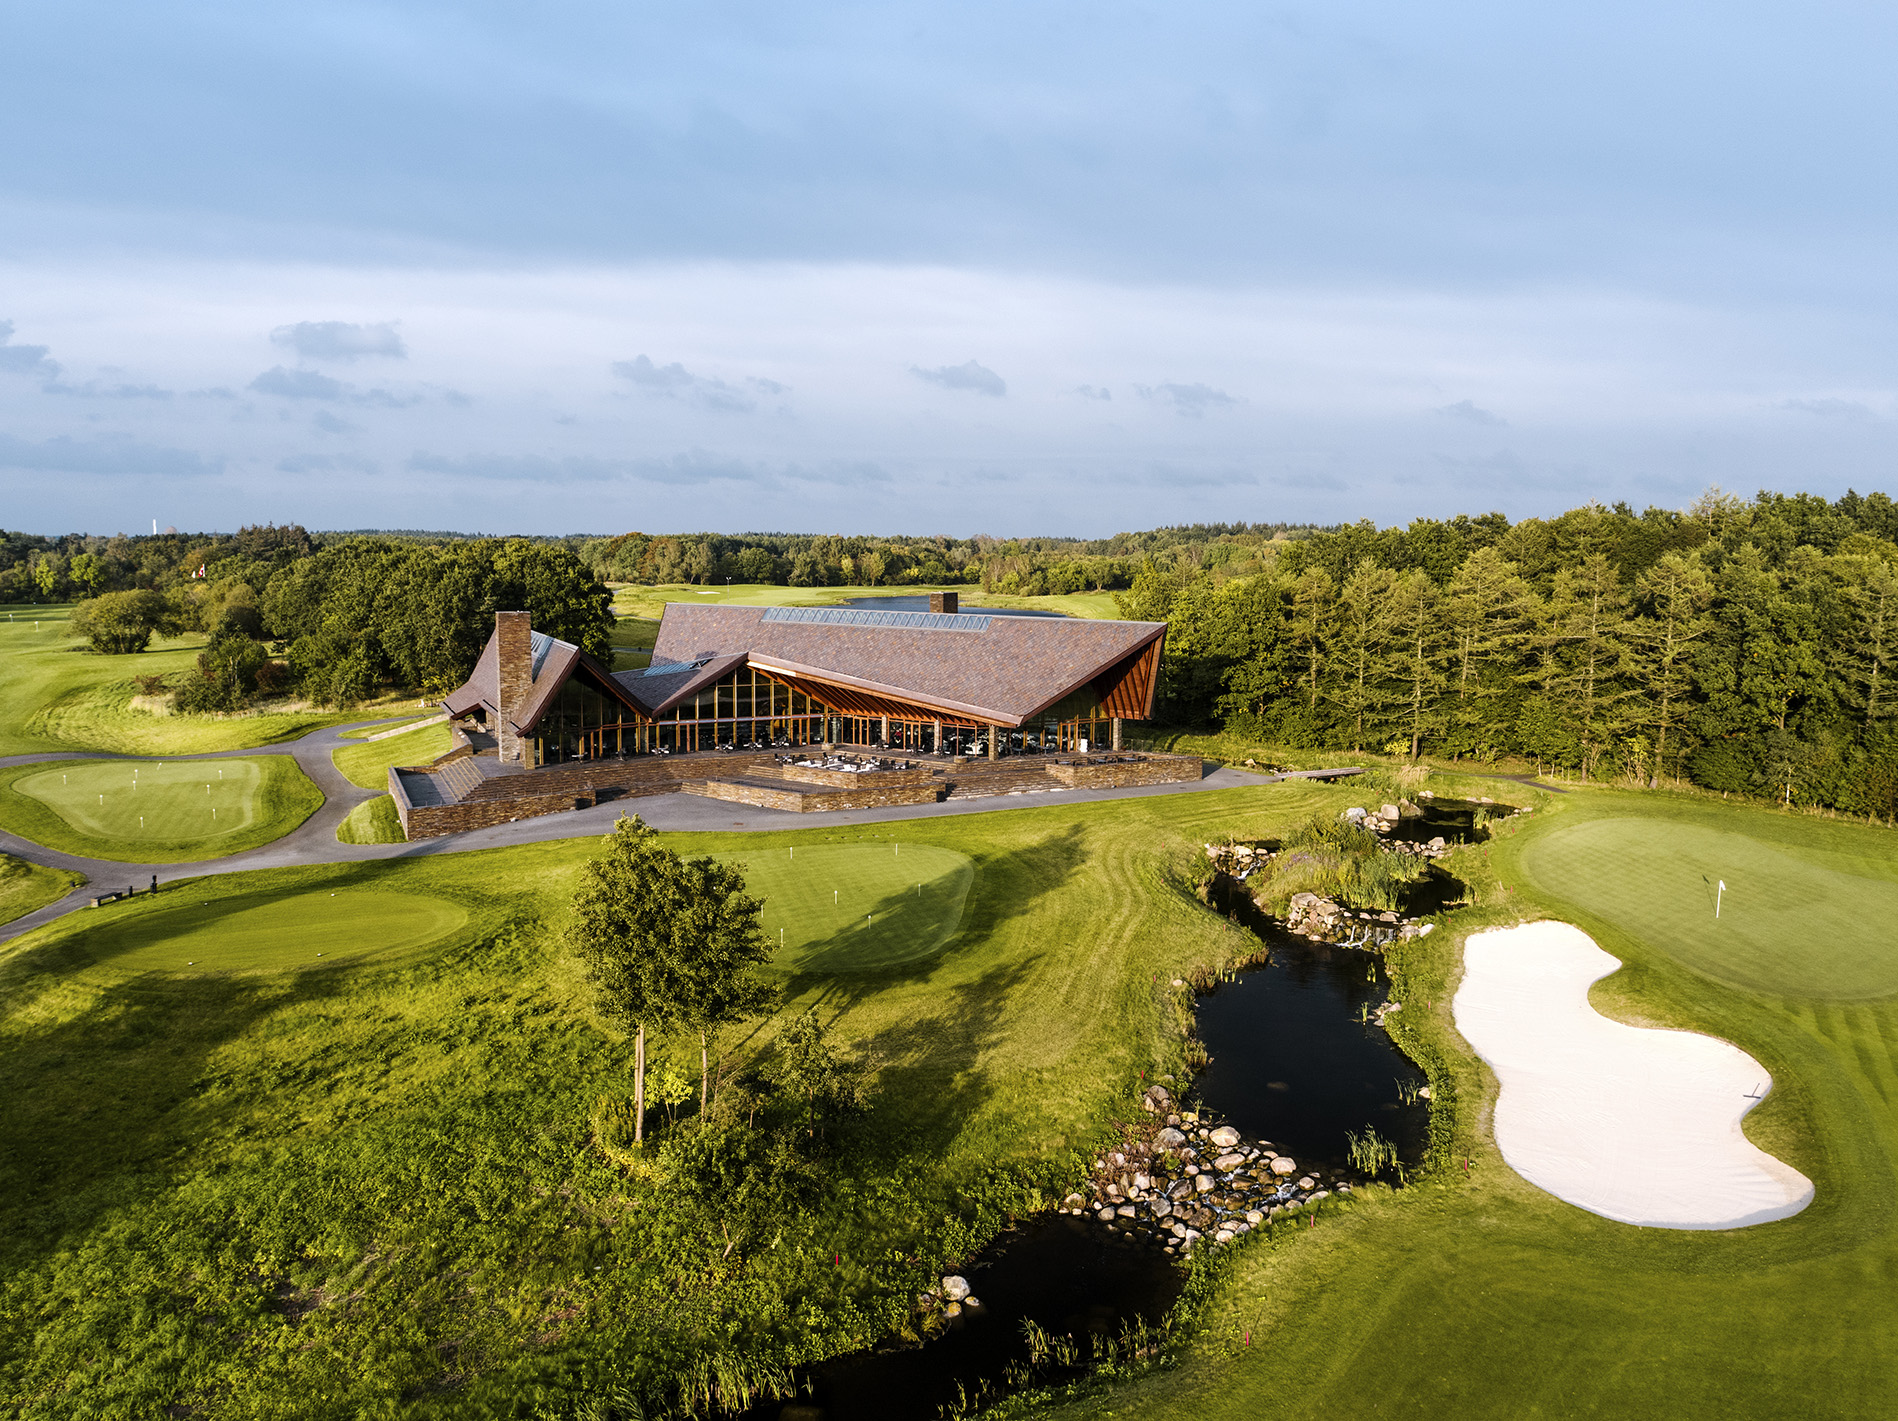 The Scandinavian Golf Club